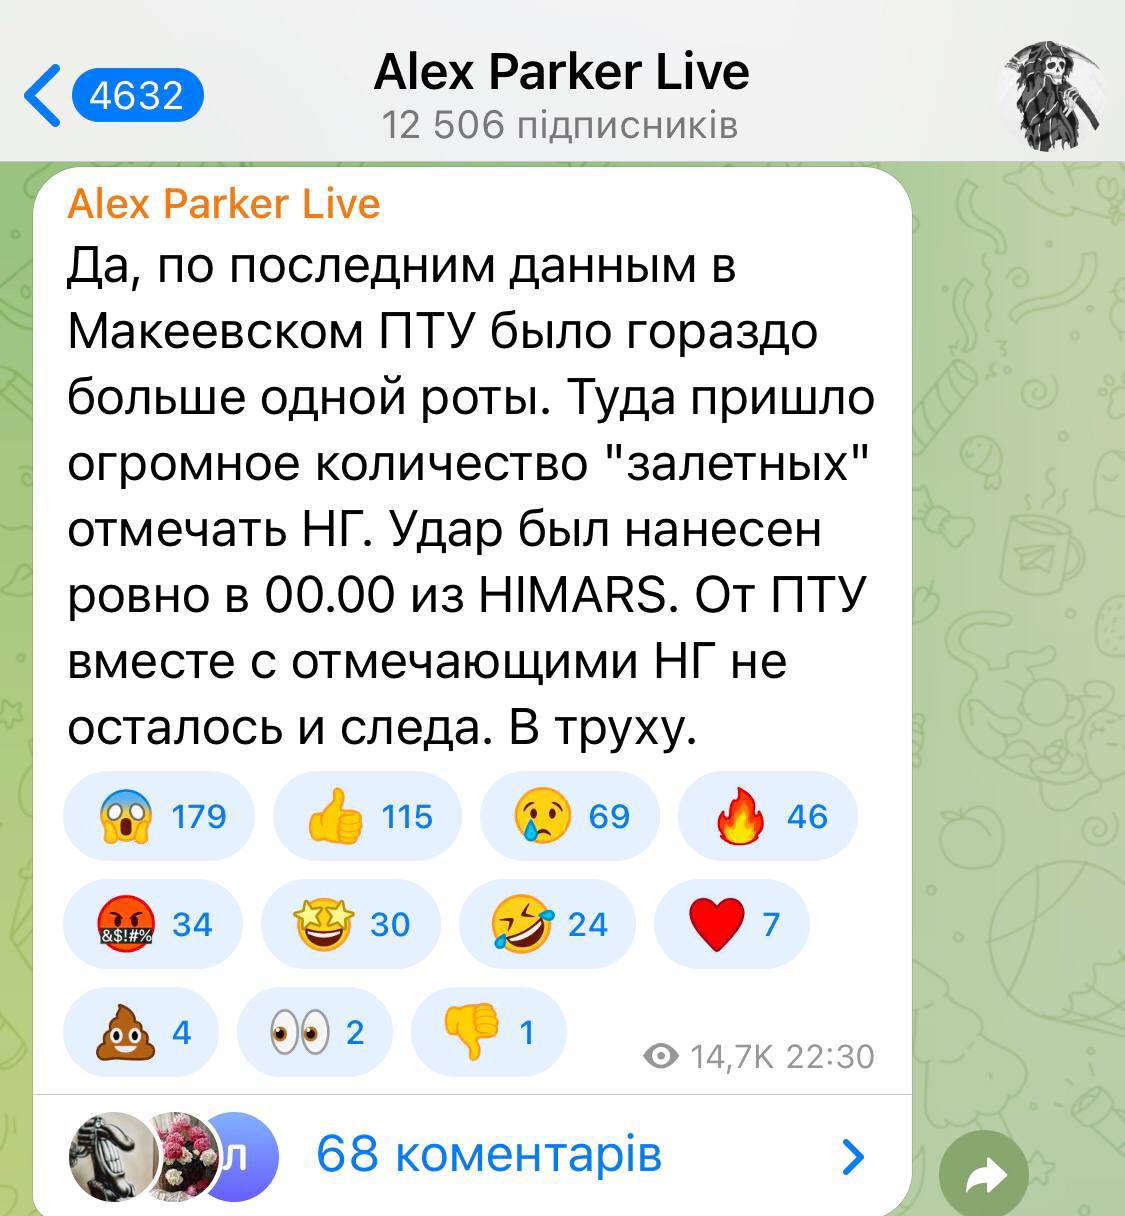 Видео из украины на сегодня телеграмм фото 90